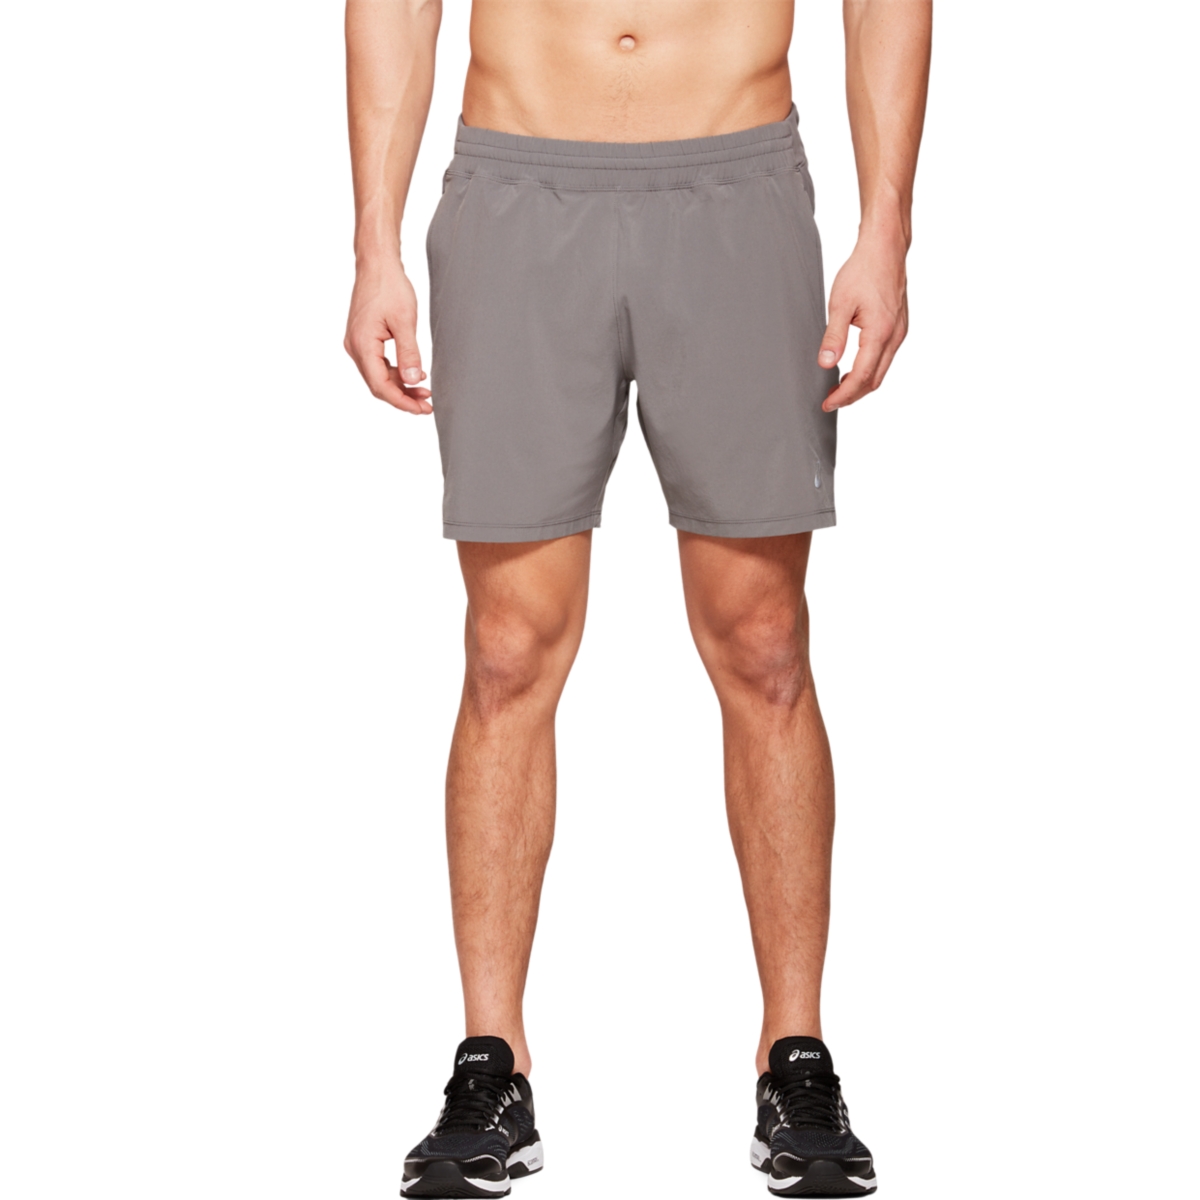 Мужская короткая беговая одежда ASICS Fietro 7 дюймов 2011A141